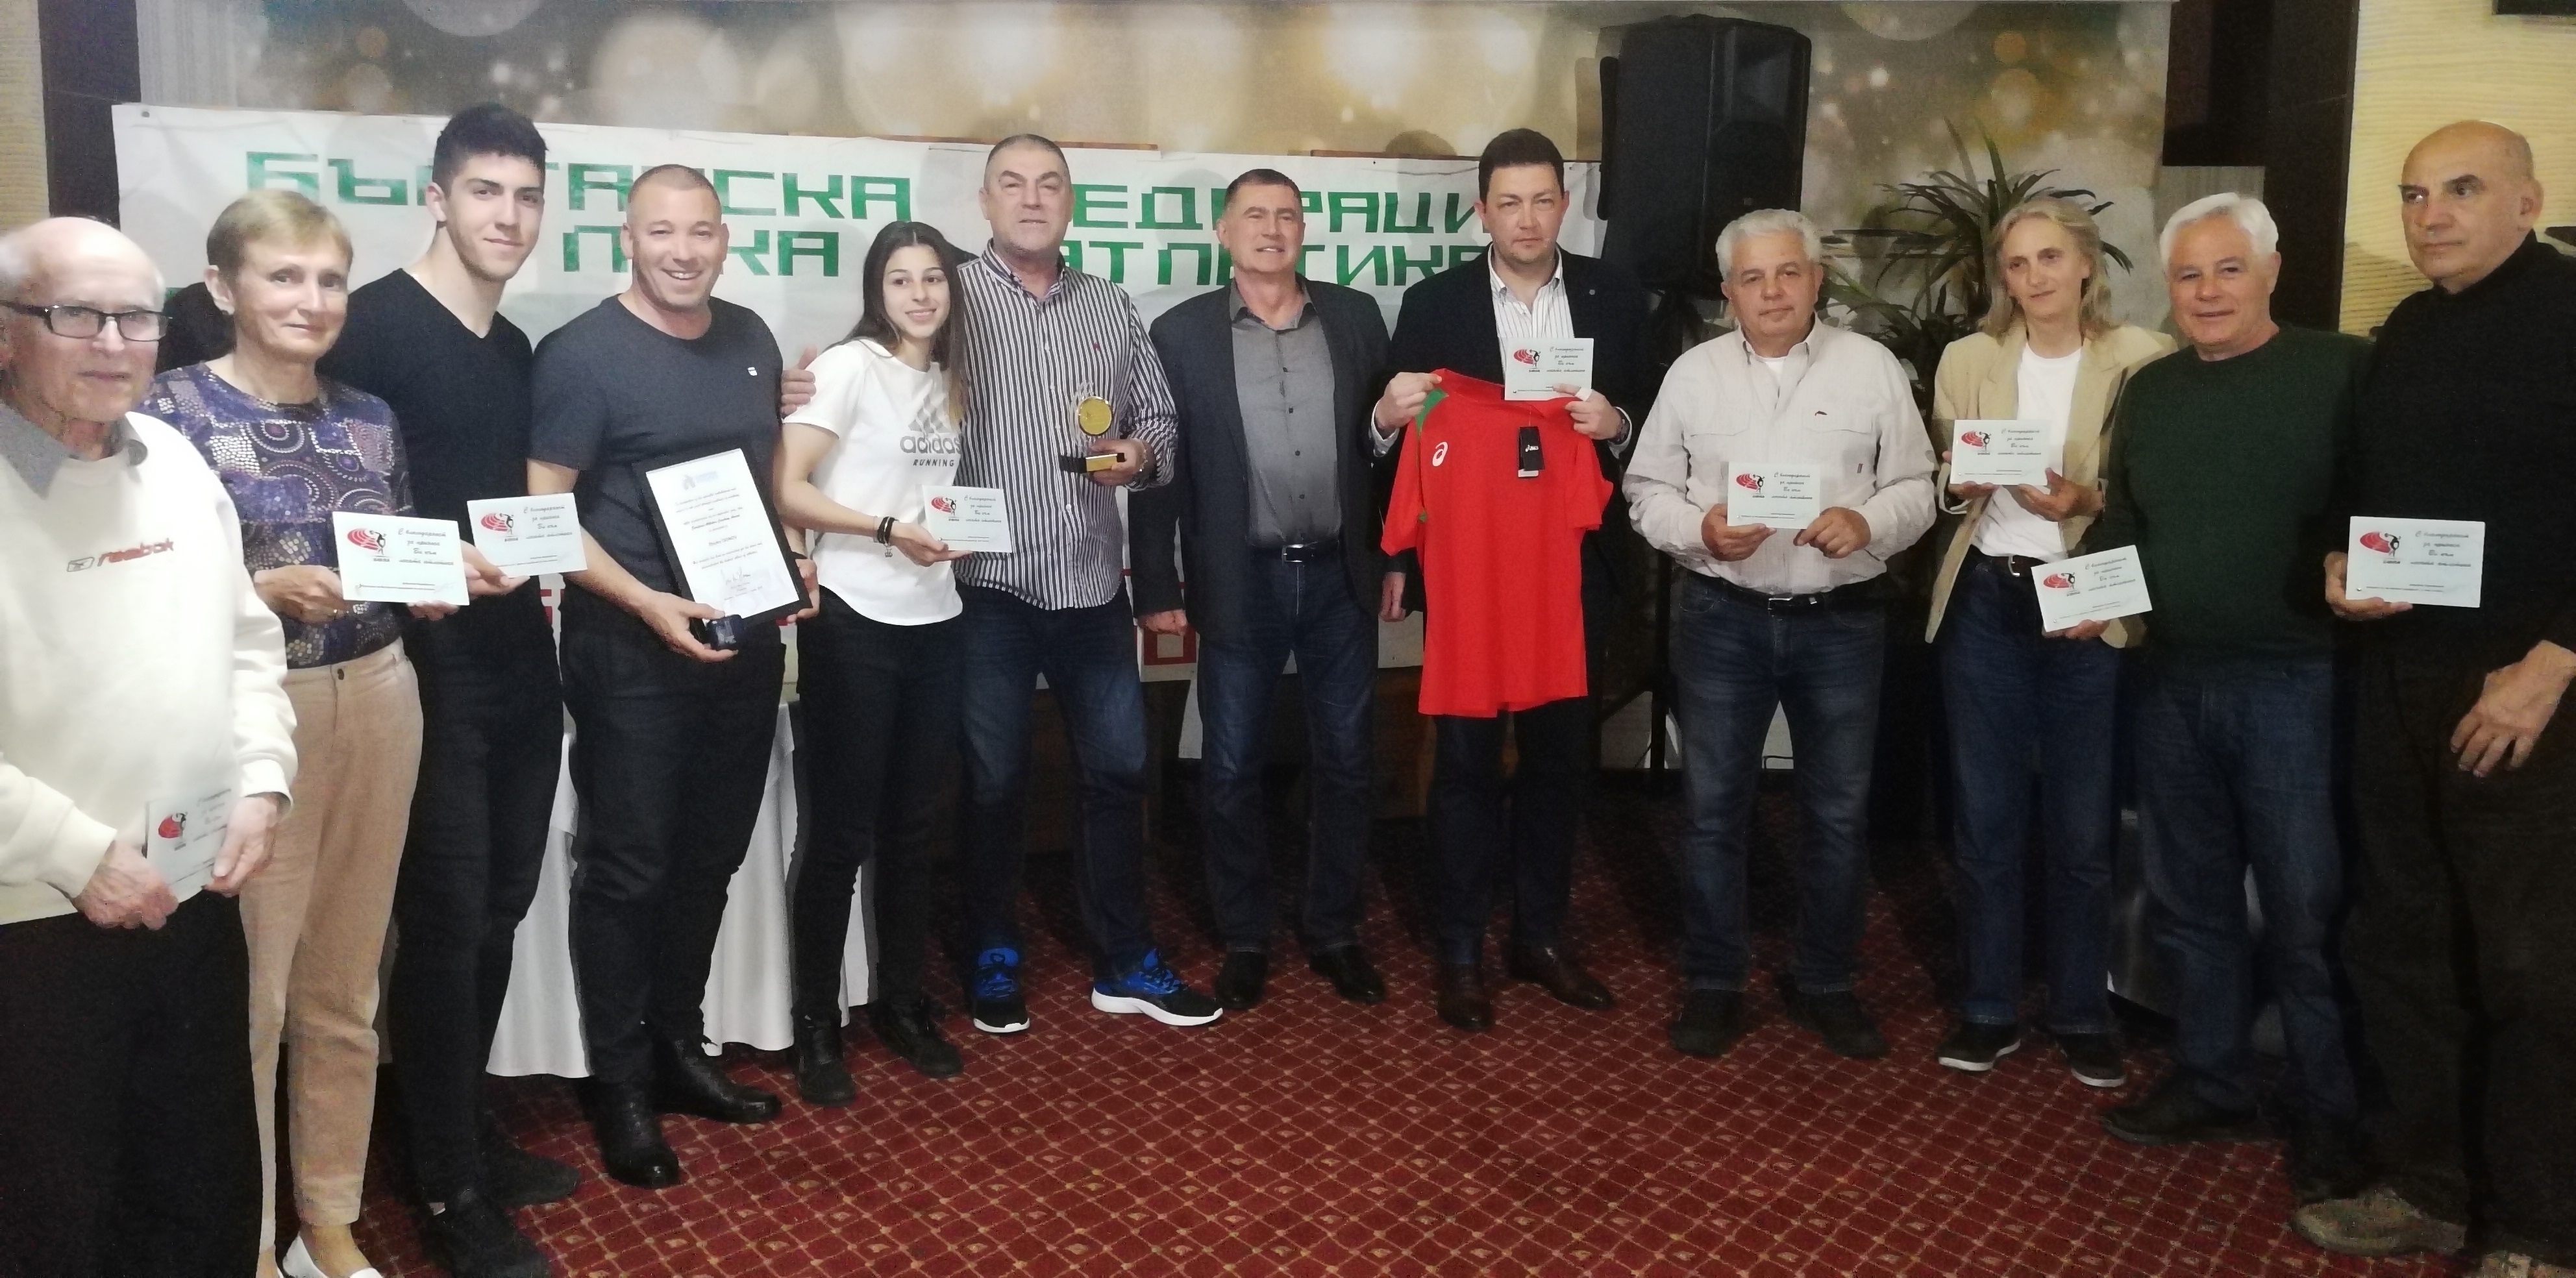 Българска федерация лека атлетика награди заслужили деятели треньори и атлети